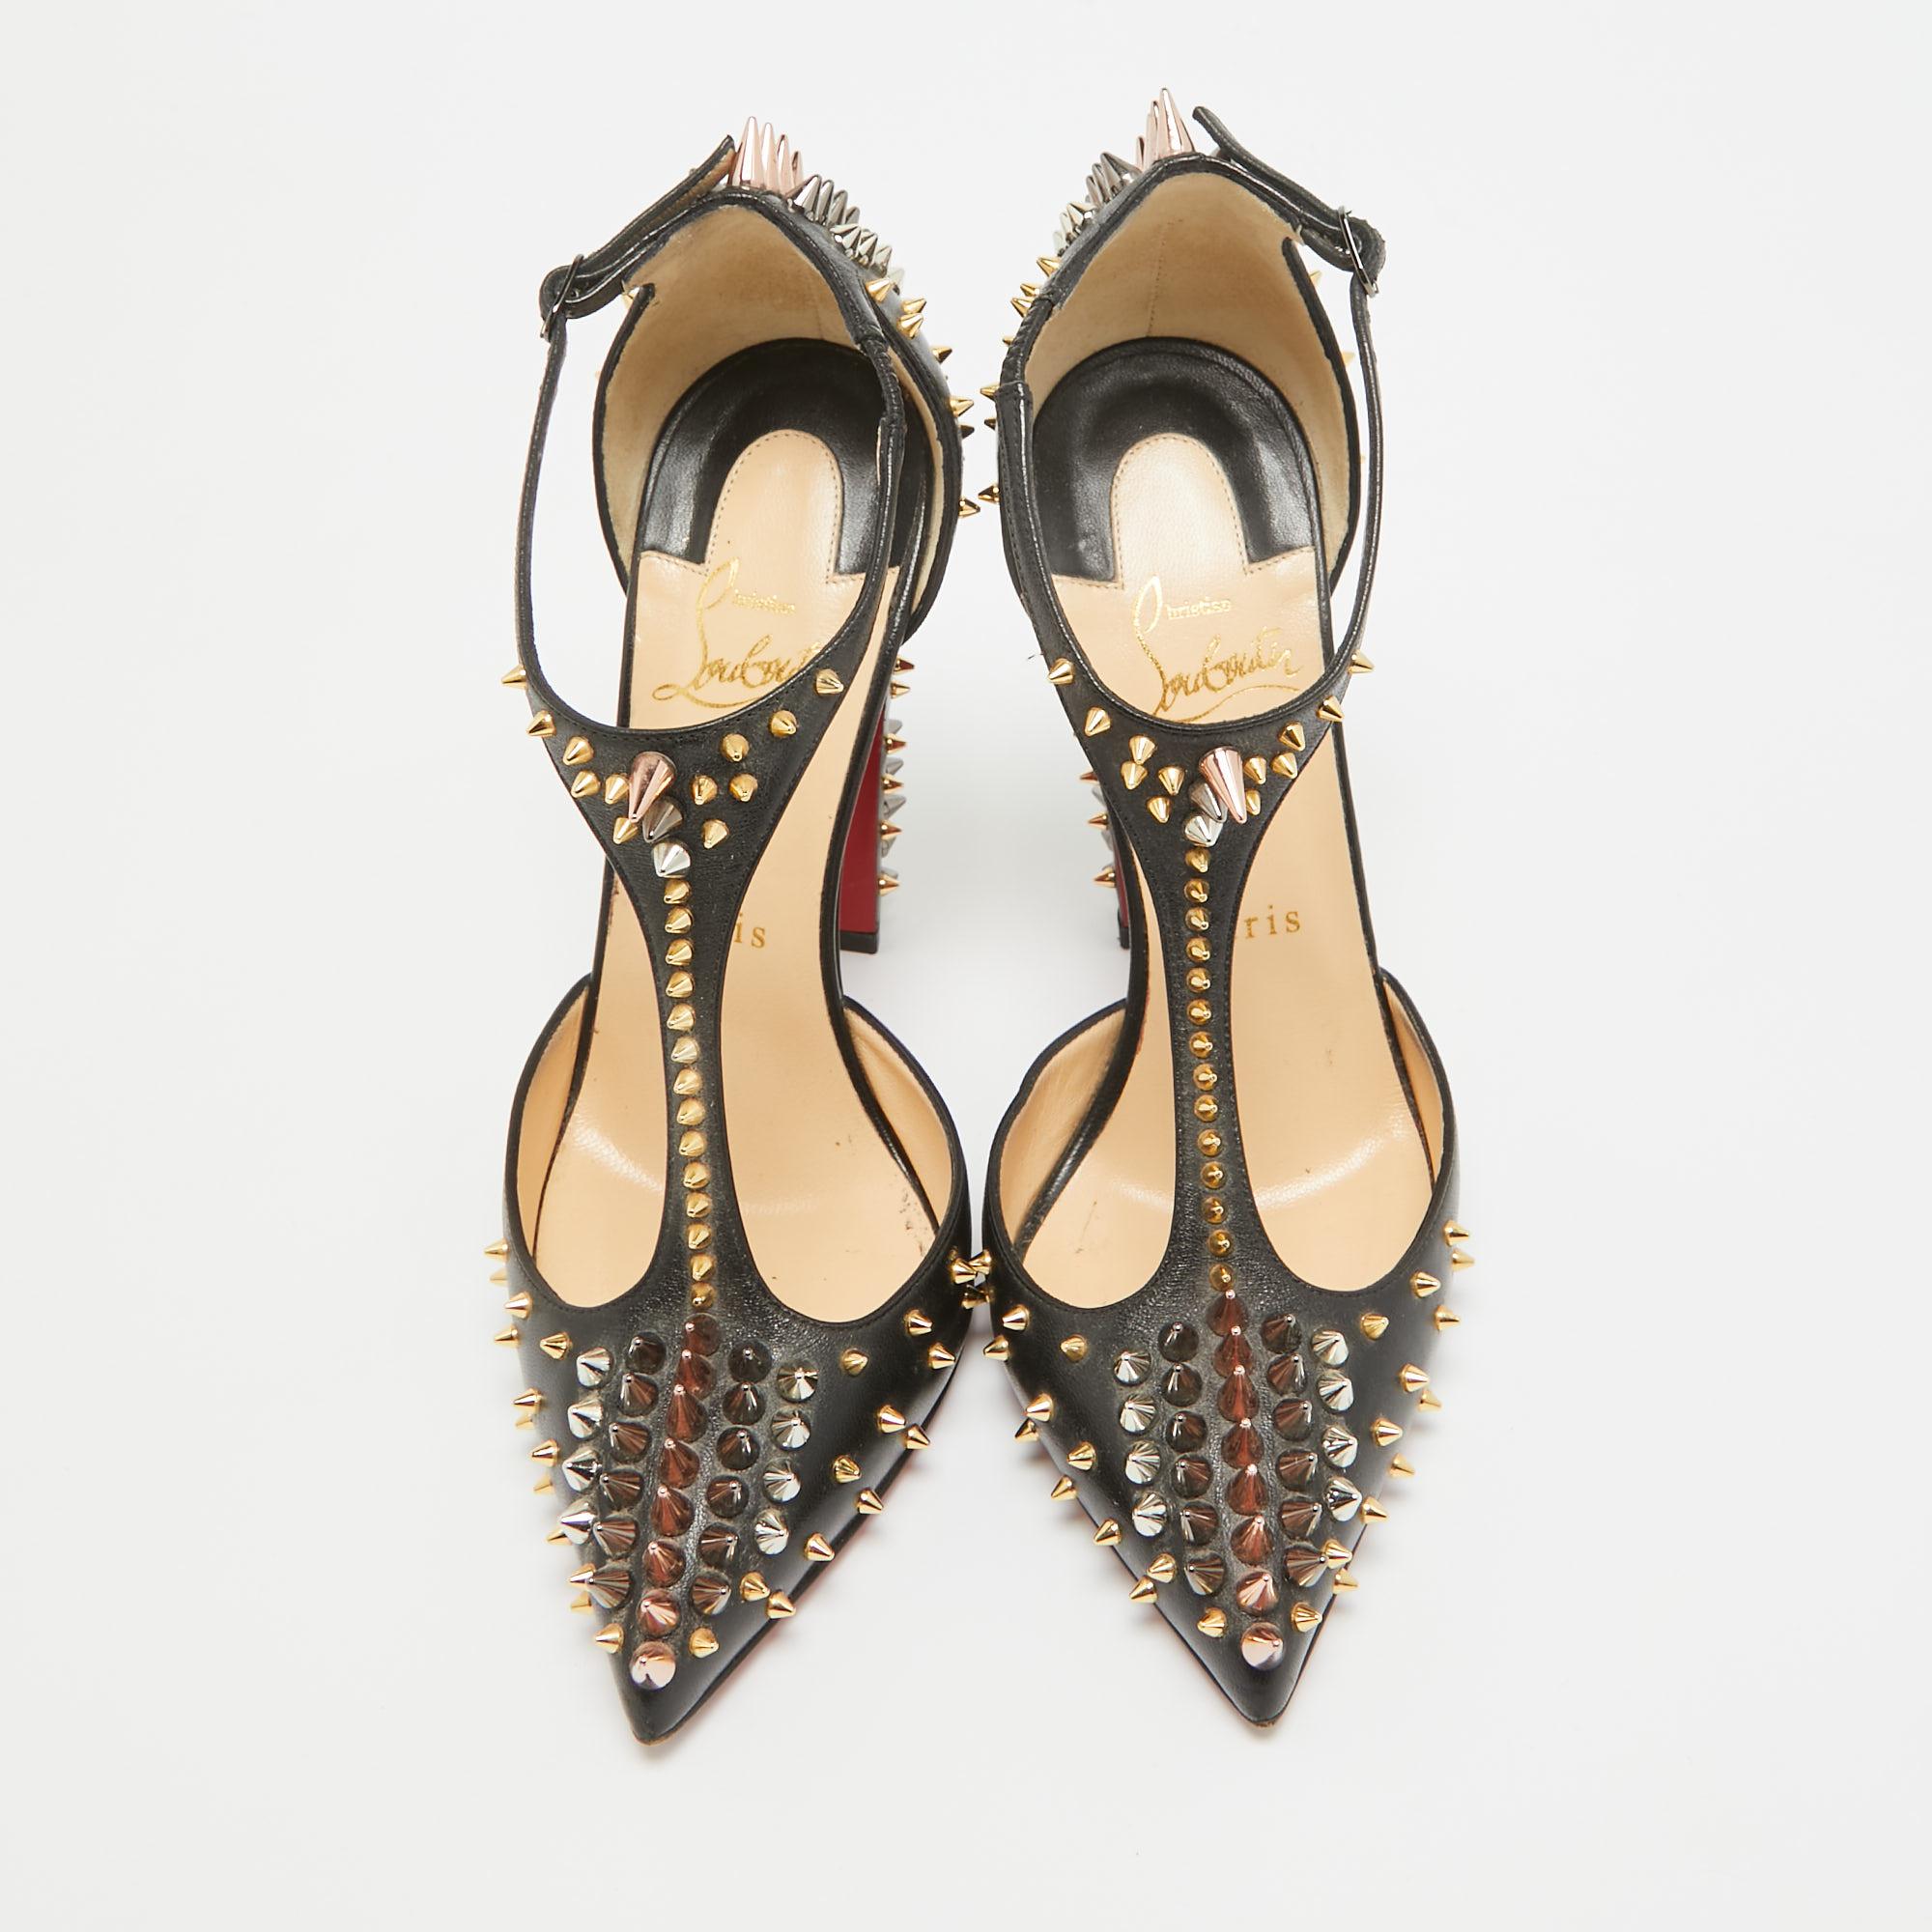 Découvrez l'élégance de la chaussure avec ces escarpins pour femme Christian Louboutin. Méticuleusement conçus, ces talons marient mode et confort, vous assurant de briller dans tous les contextes.

CHRISTIAN LOUBOUTIN